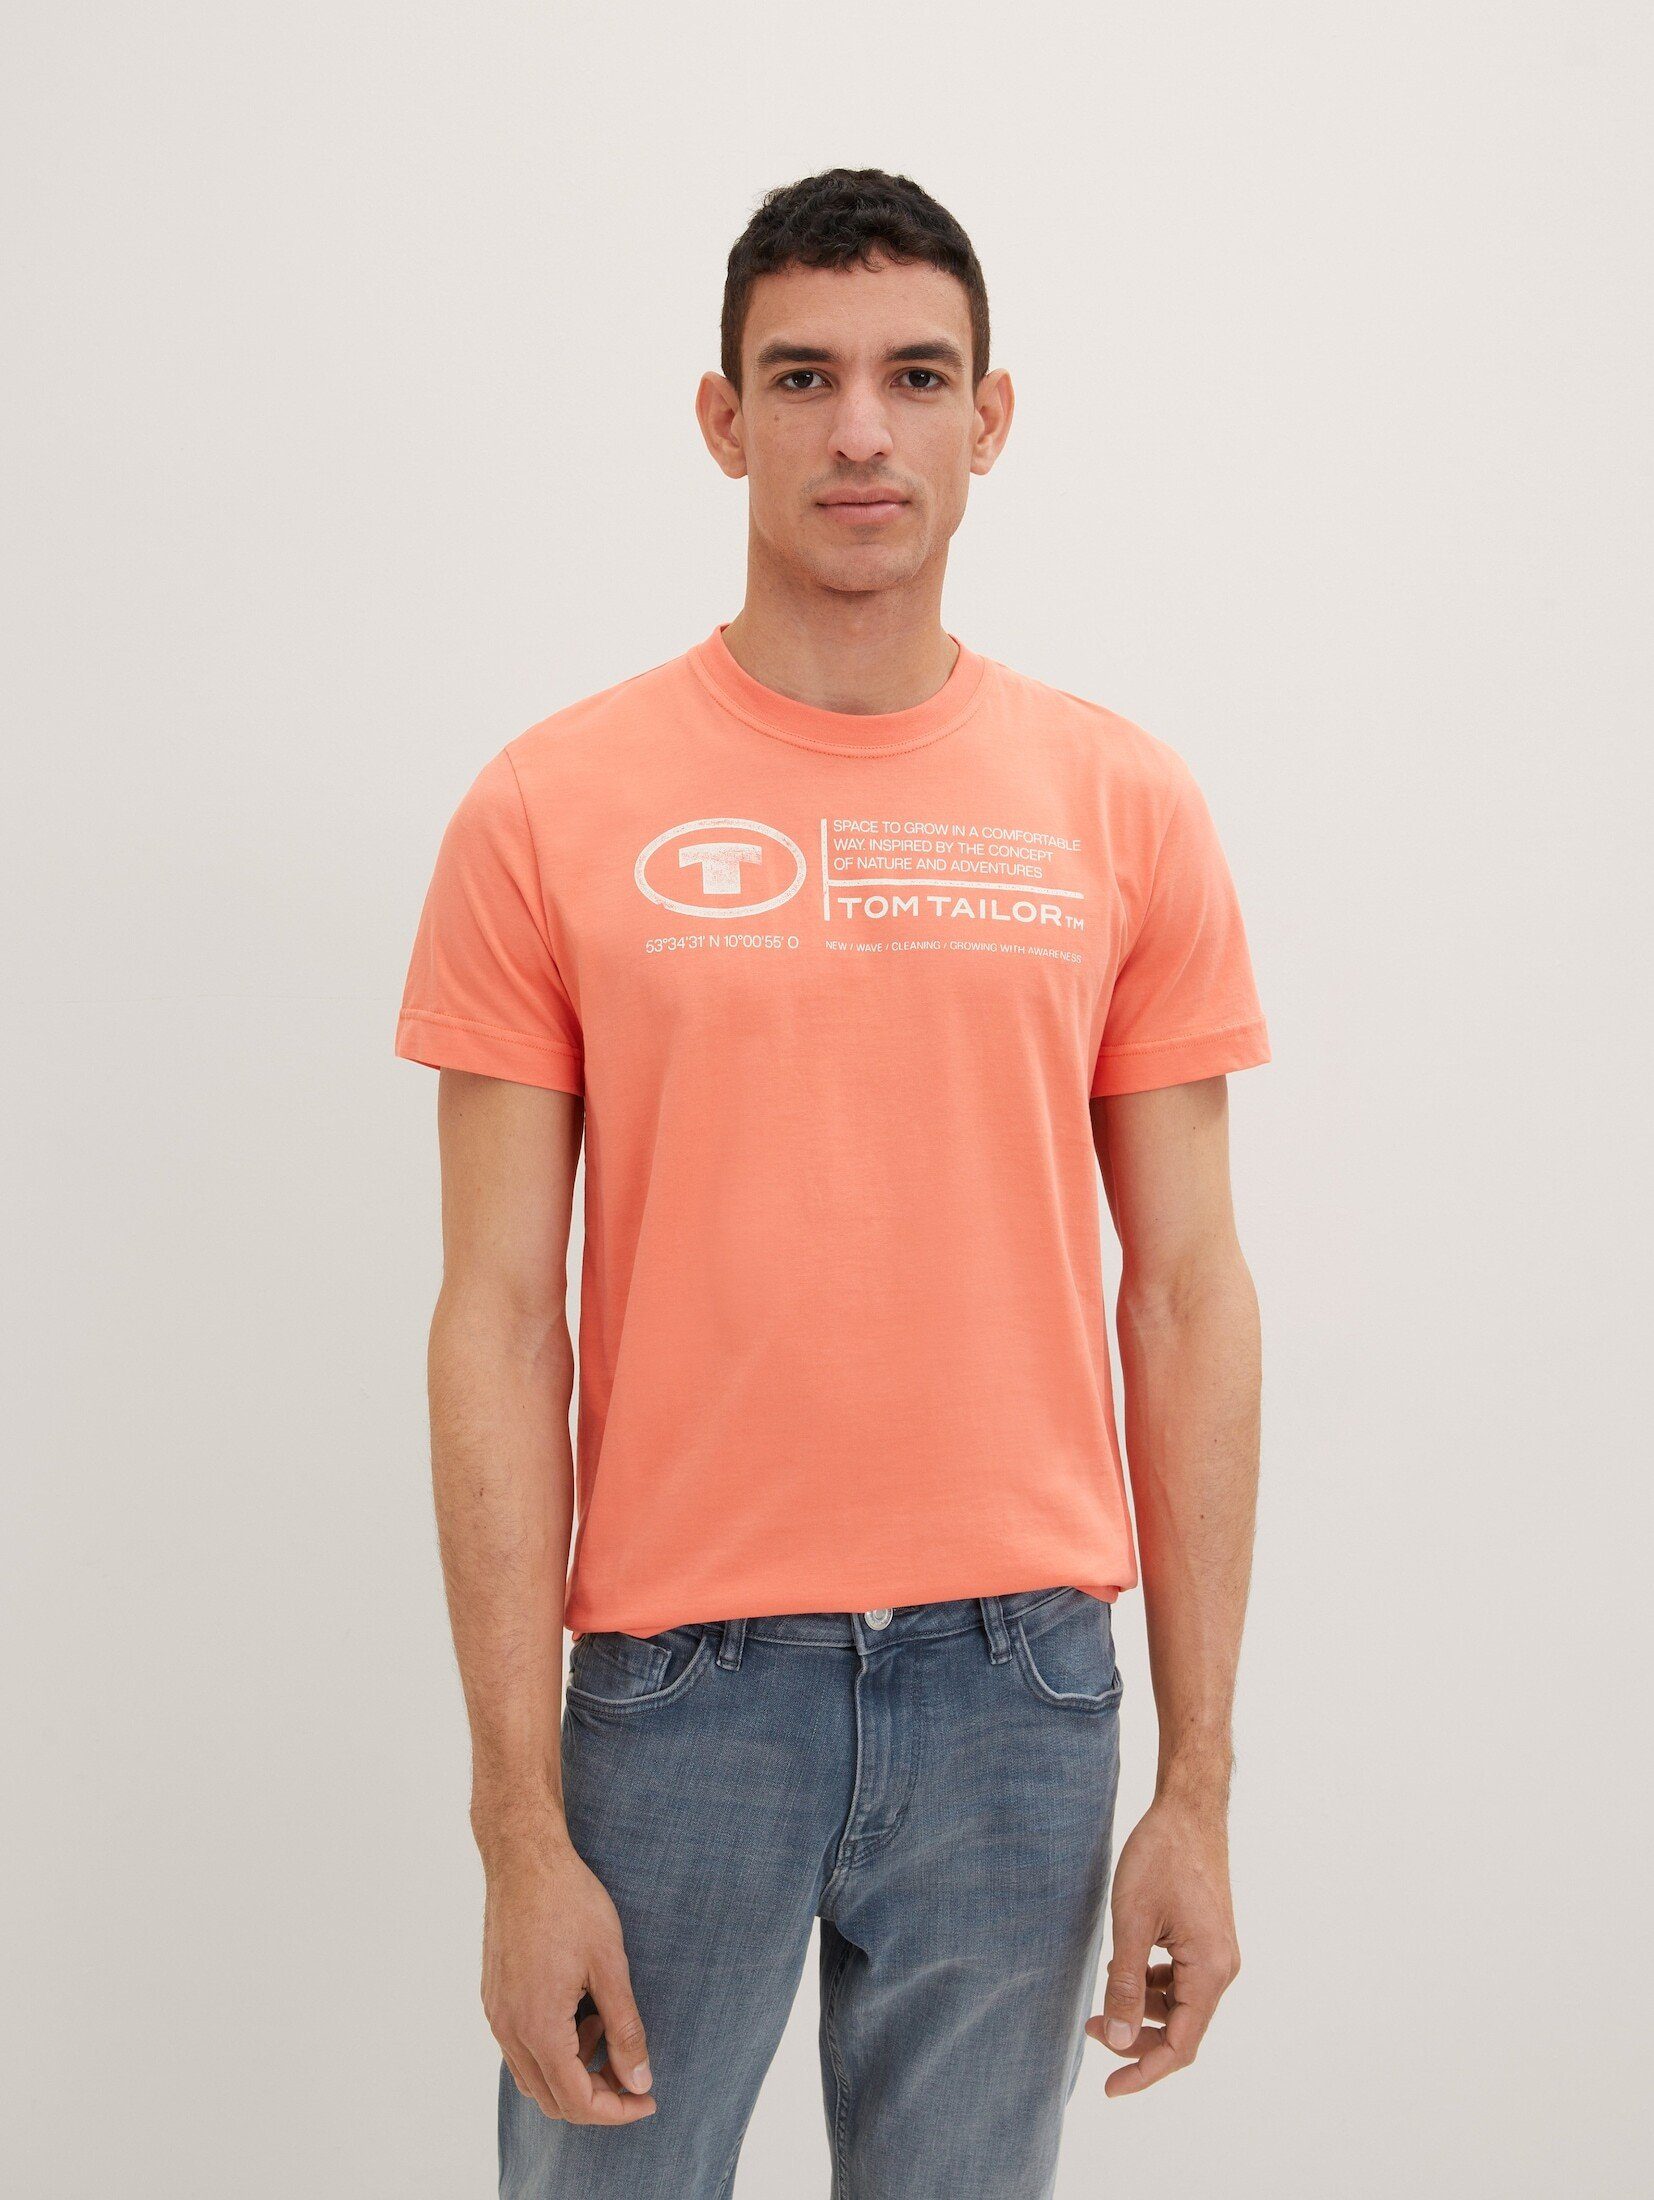 TOM TAILOR T-Shirt T-Shirt mit Logo Print soft peach orange